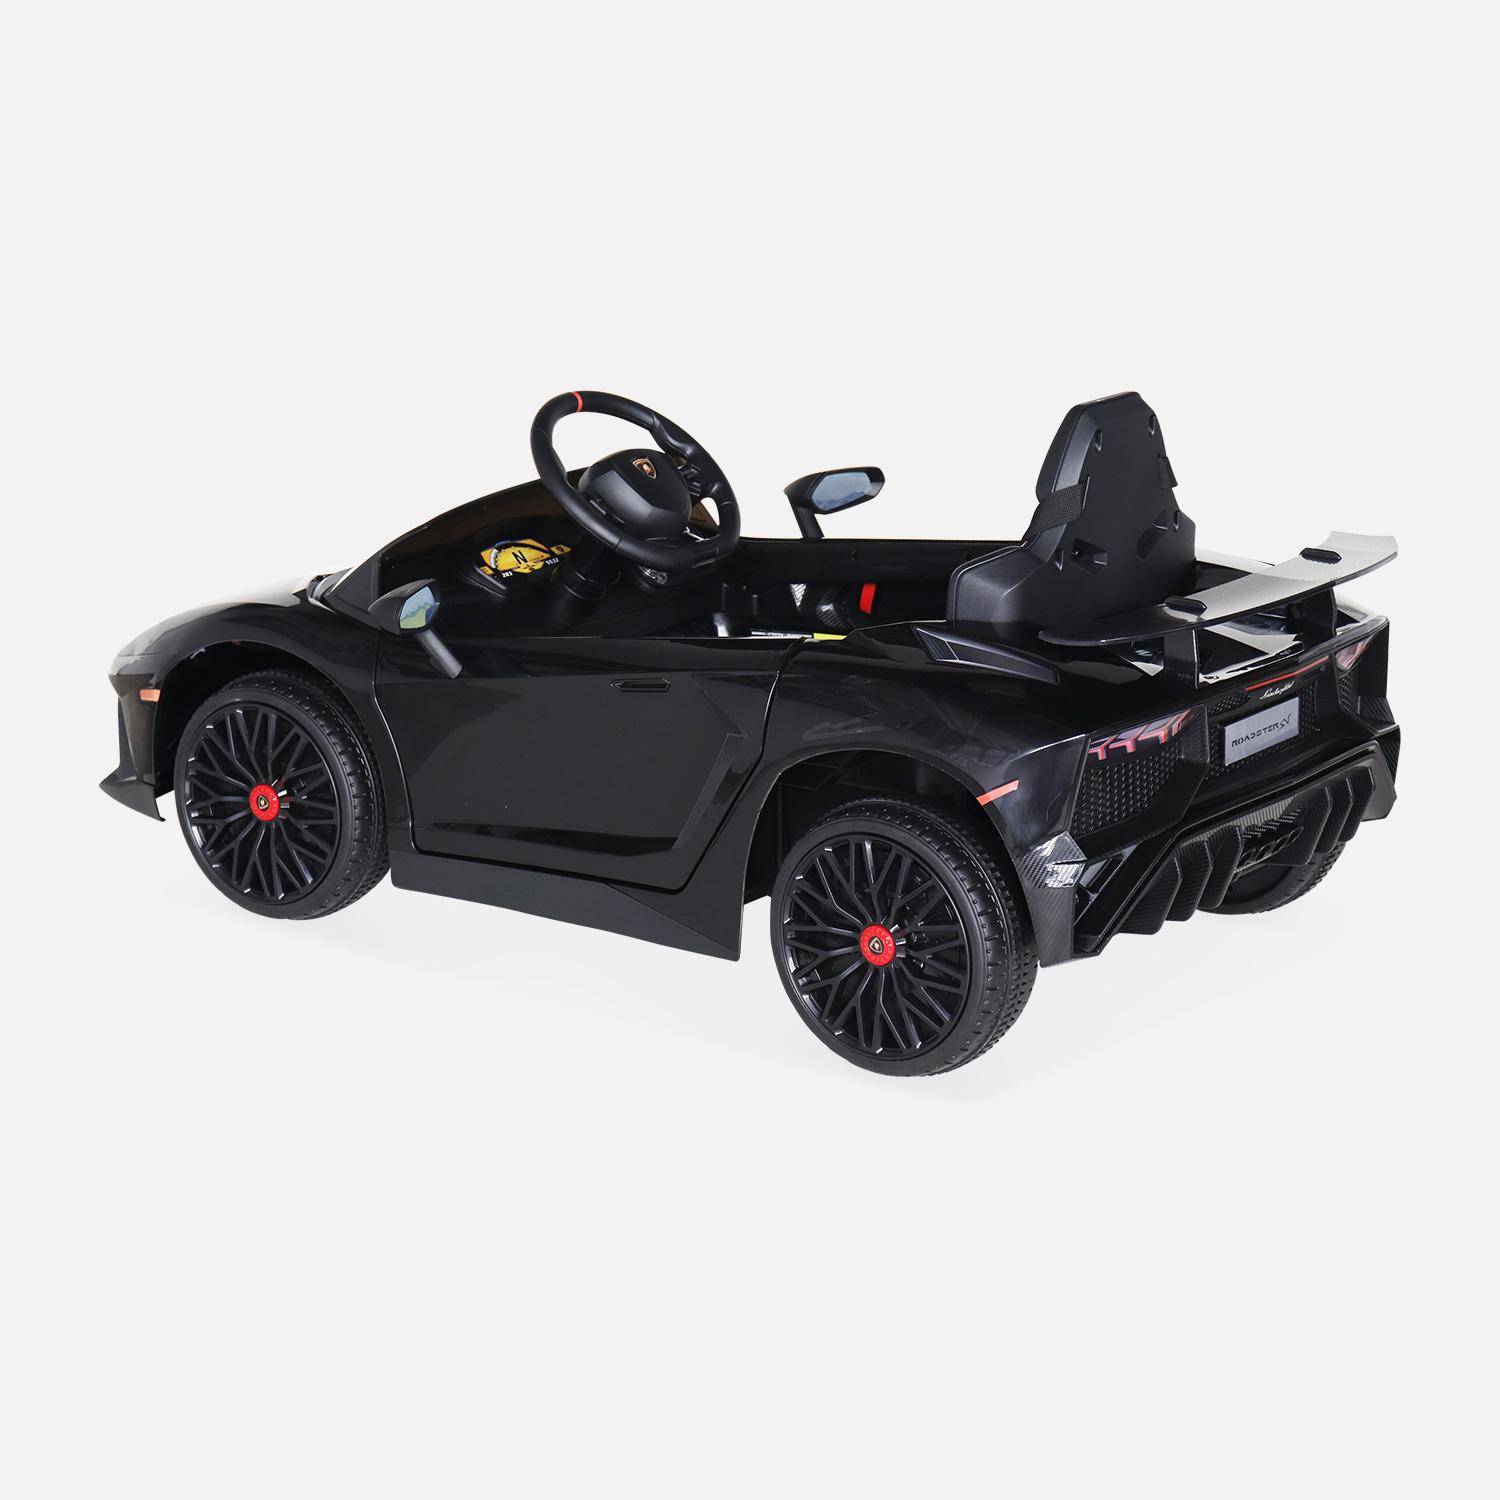 12V Lamborghini elektrische kinderauto, zwart, 1 zitplaats, met radio, afstandsbediening, MP3, USB-poort en functionele koplampen Photo4